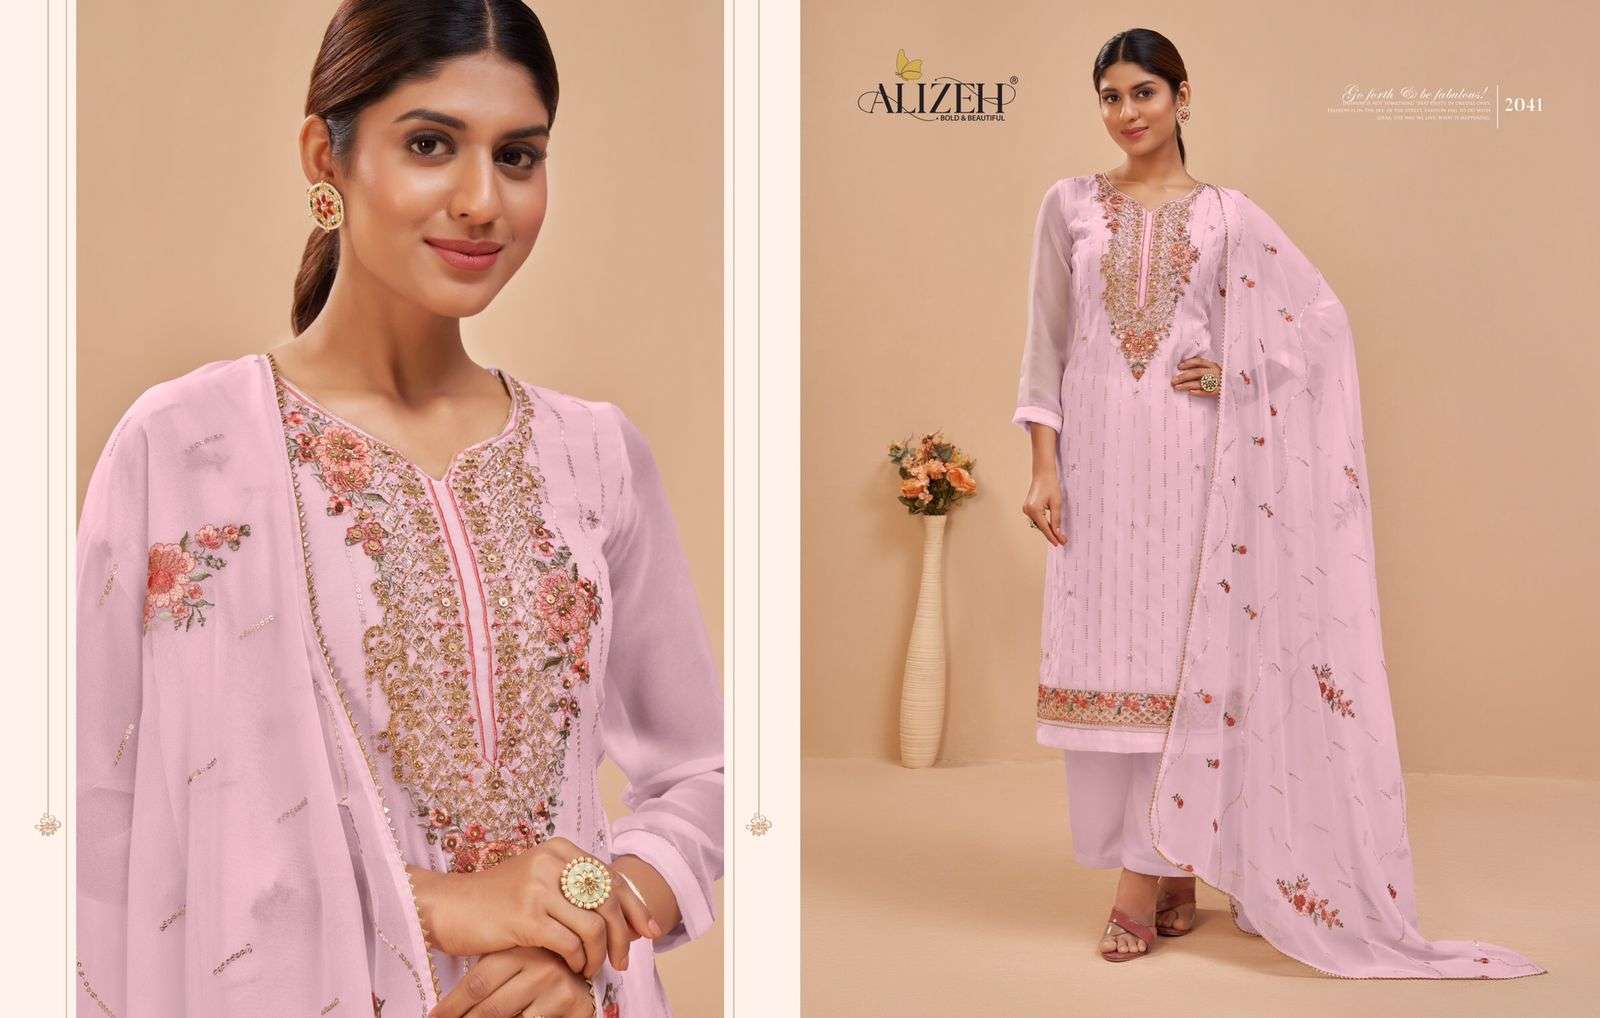 alizeh murad vol 6 2039-2043 fancy party wear salwar kameez wholesale price